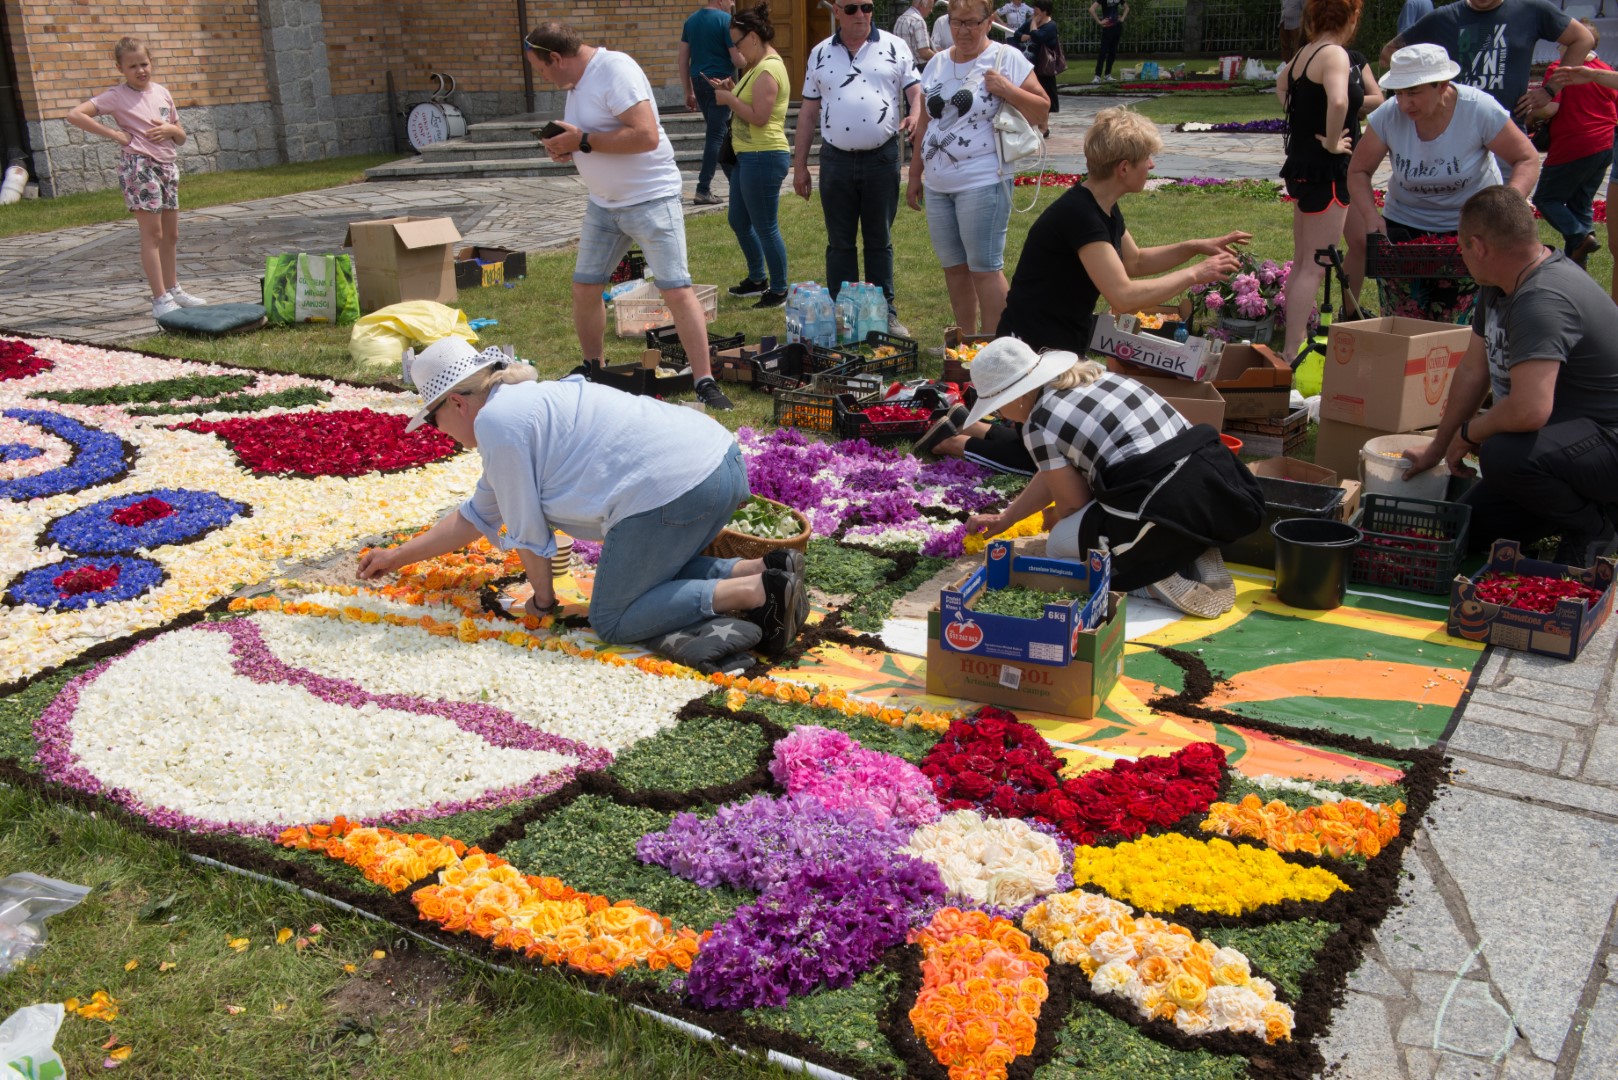 Kilka osób układa dywan z kwiatów, część się przygląda